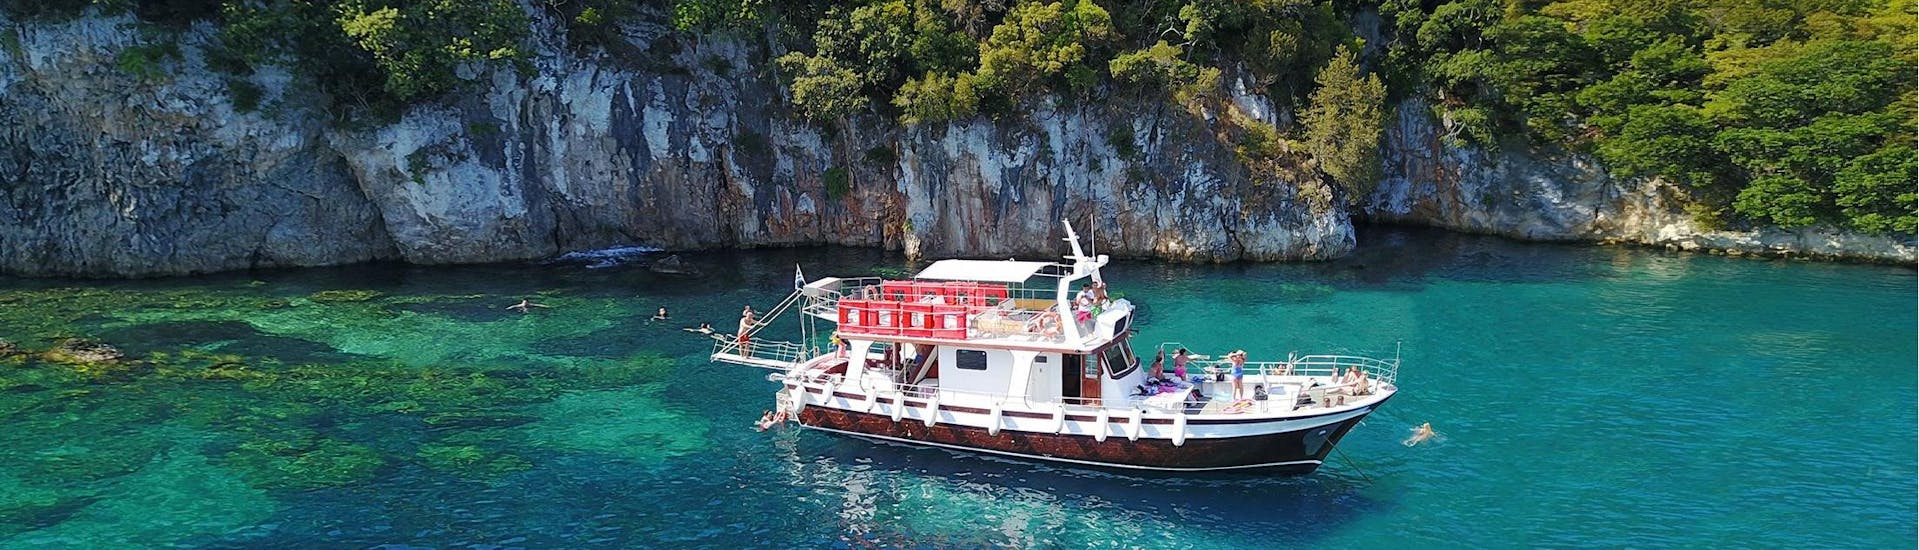 De moderne houten boot die voor de Zephyros Milos boottochten wordt gebruikt, ligt in een baai met kristalhelder water in Milos.